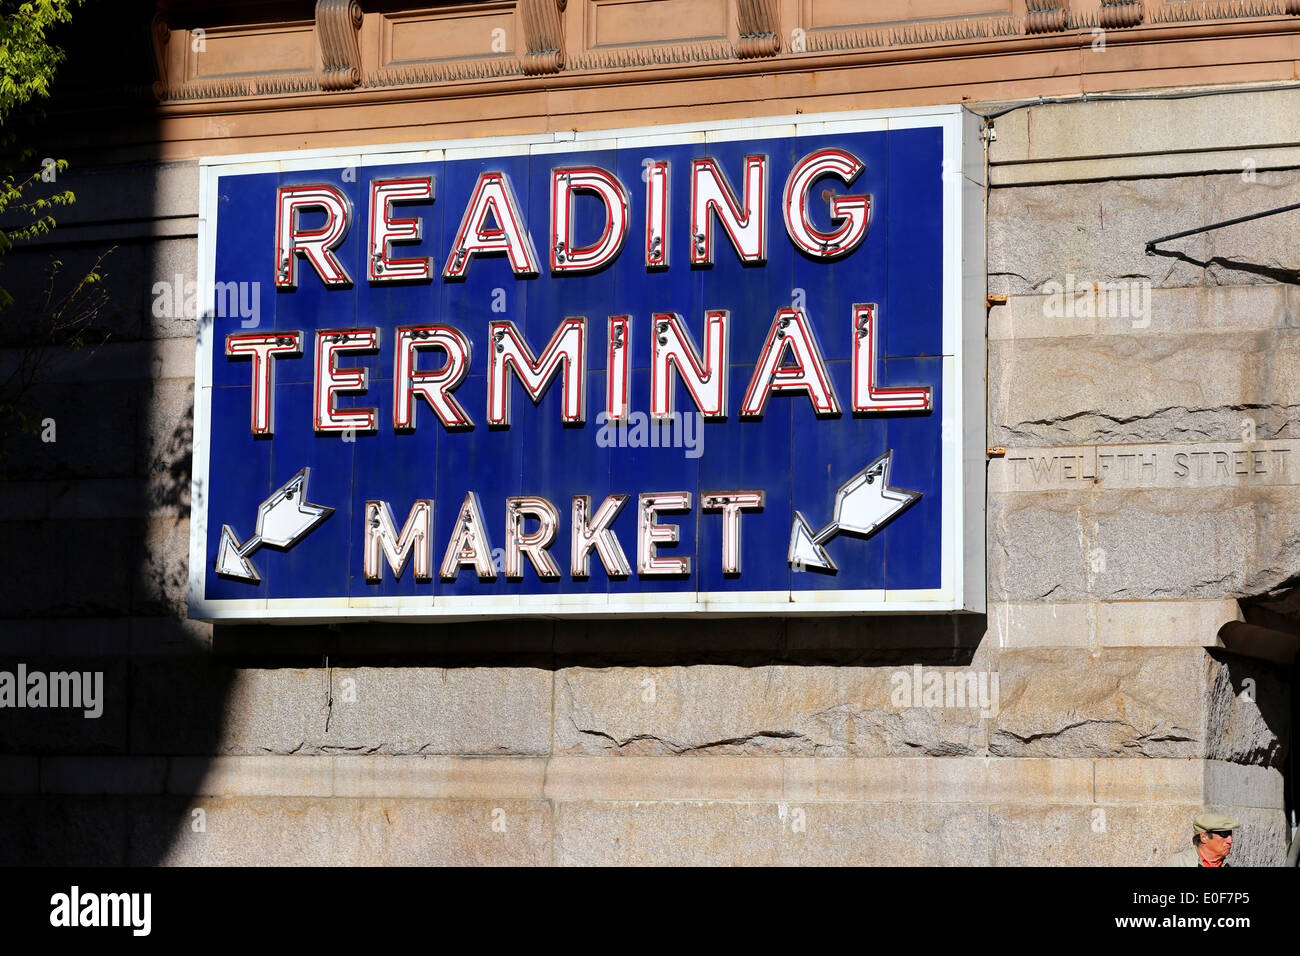 El mercado Reading Terminal, Philadelphia, PA Foto de stock